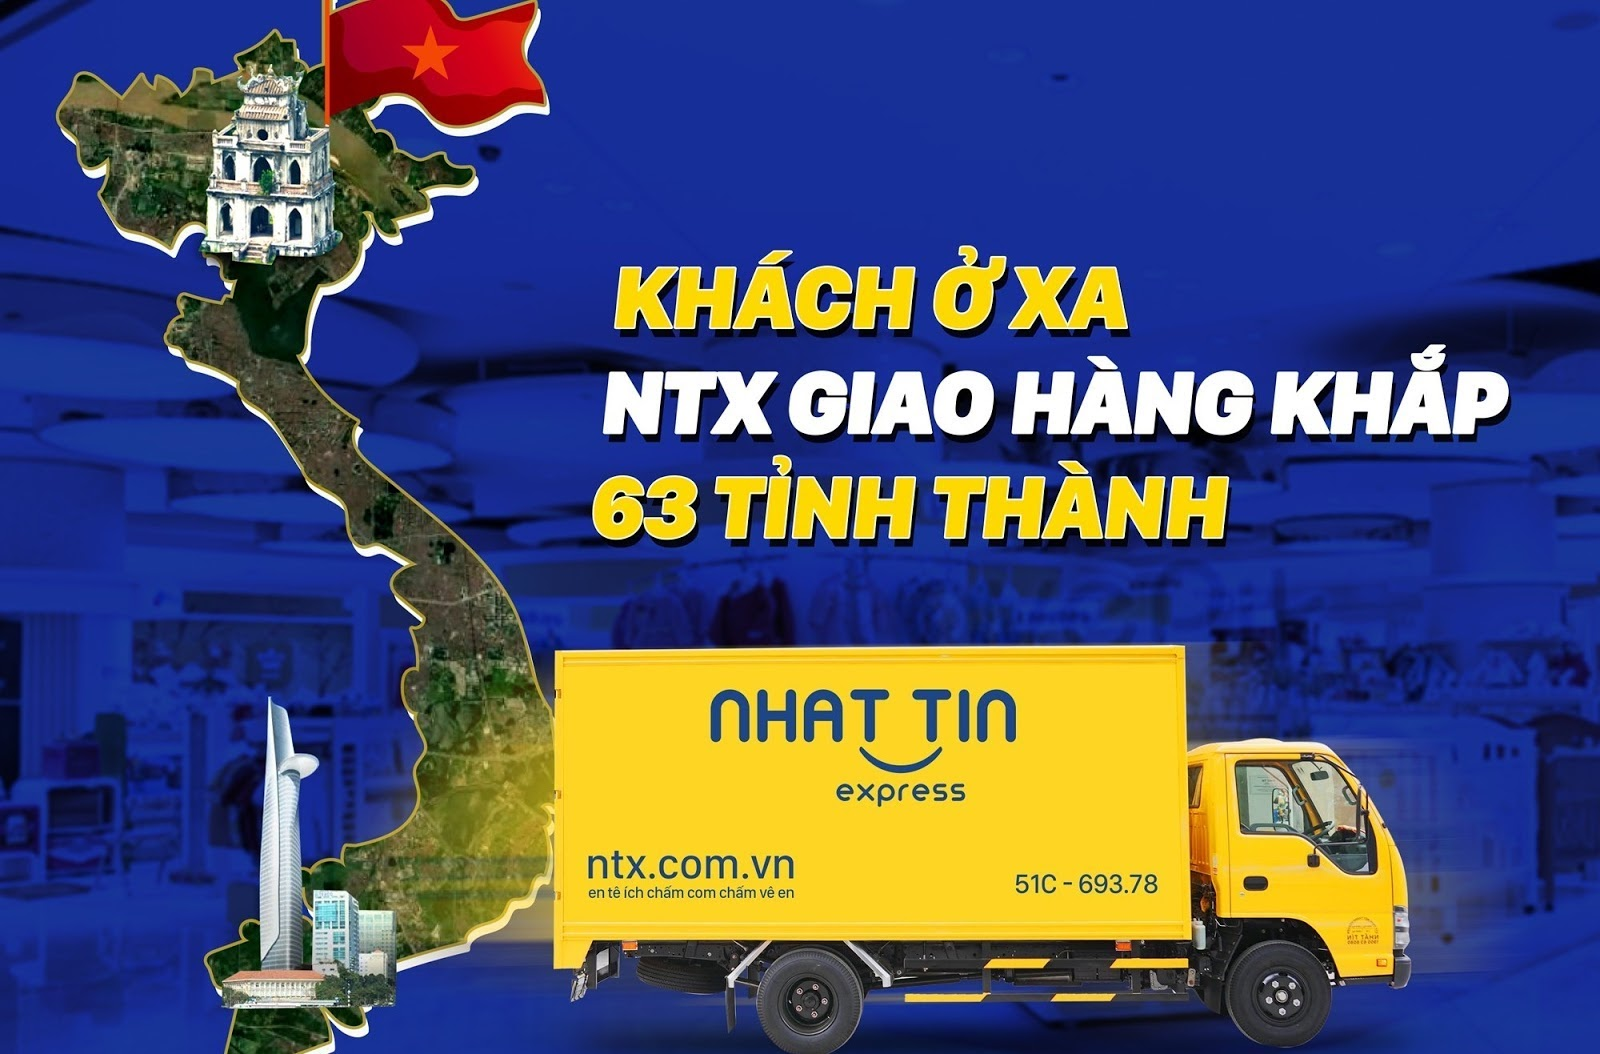 NTX đơn vị cung cấp dịch vụ ship hàng rẻ uy tín